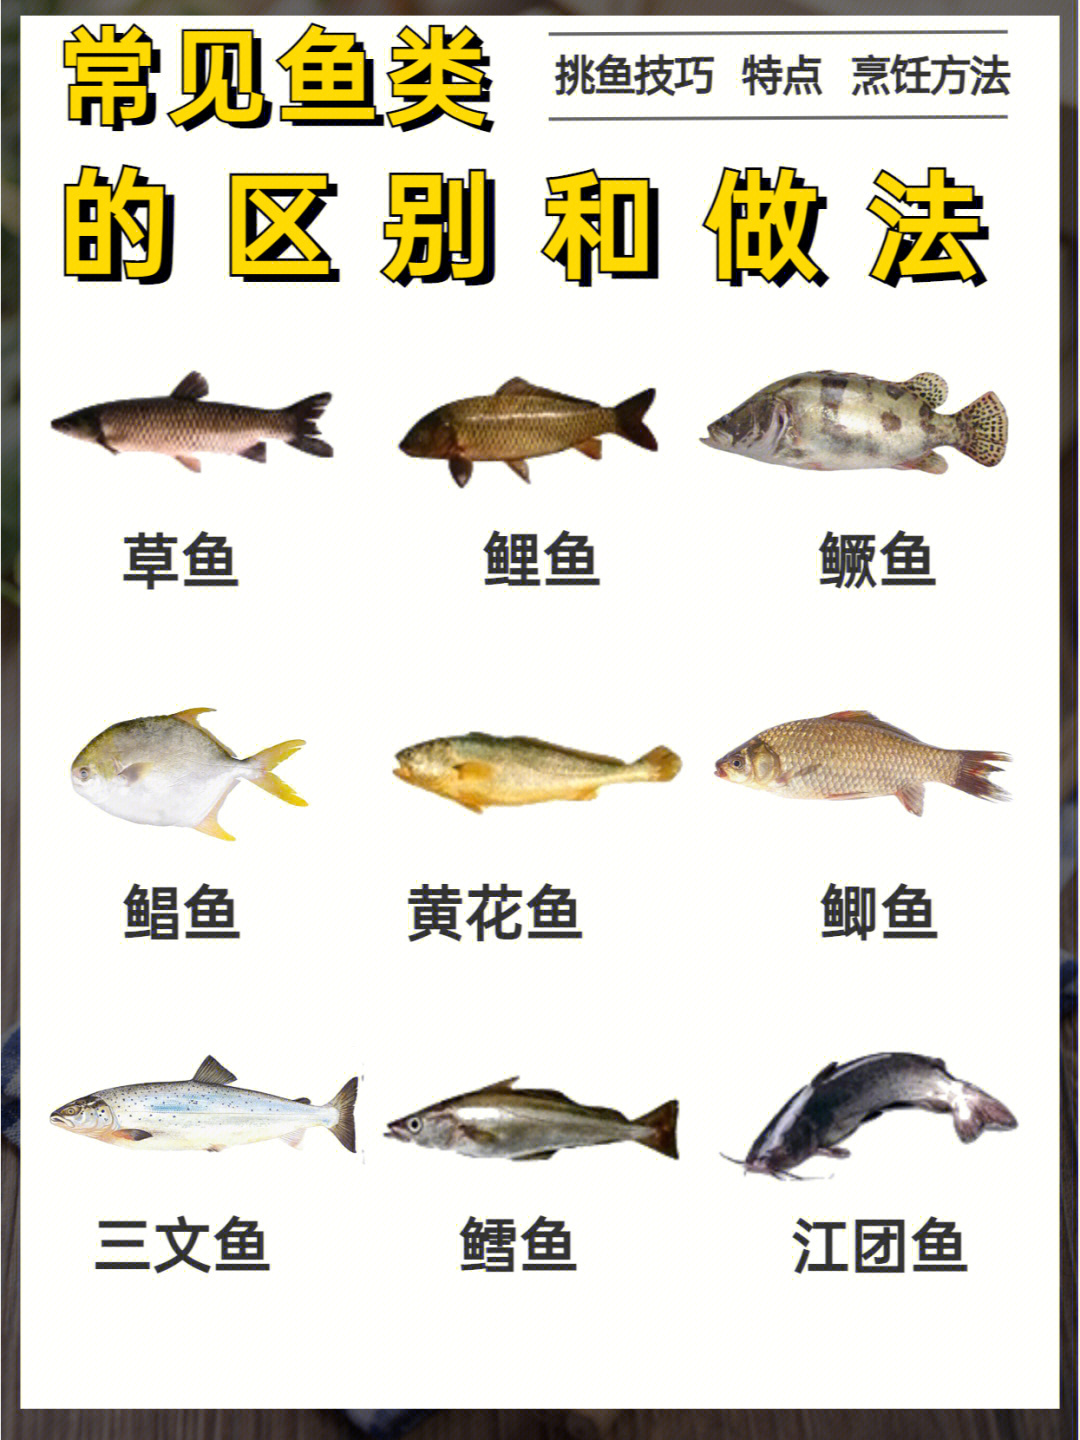 9种常见鱼类的区别及做法166分钟掌握